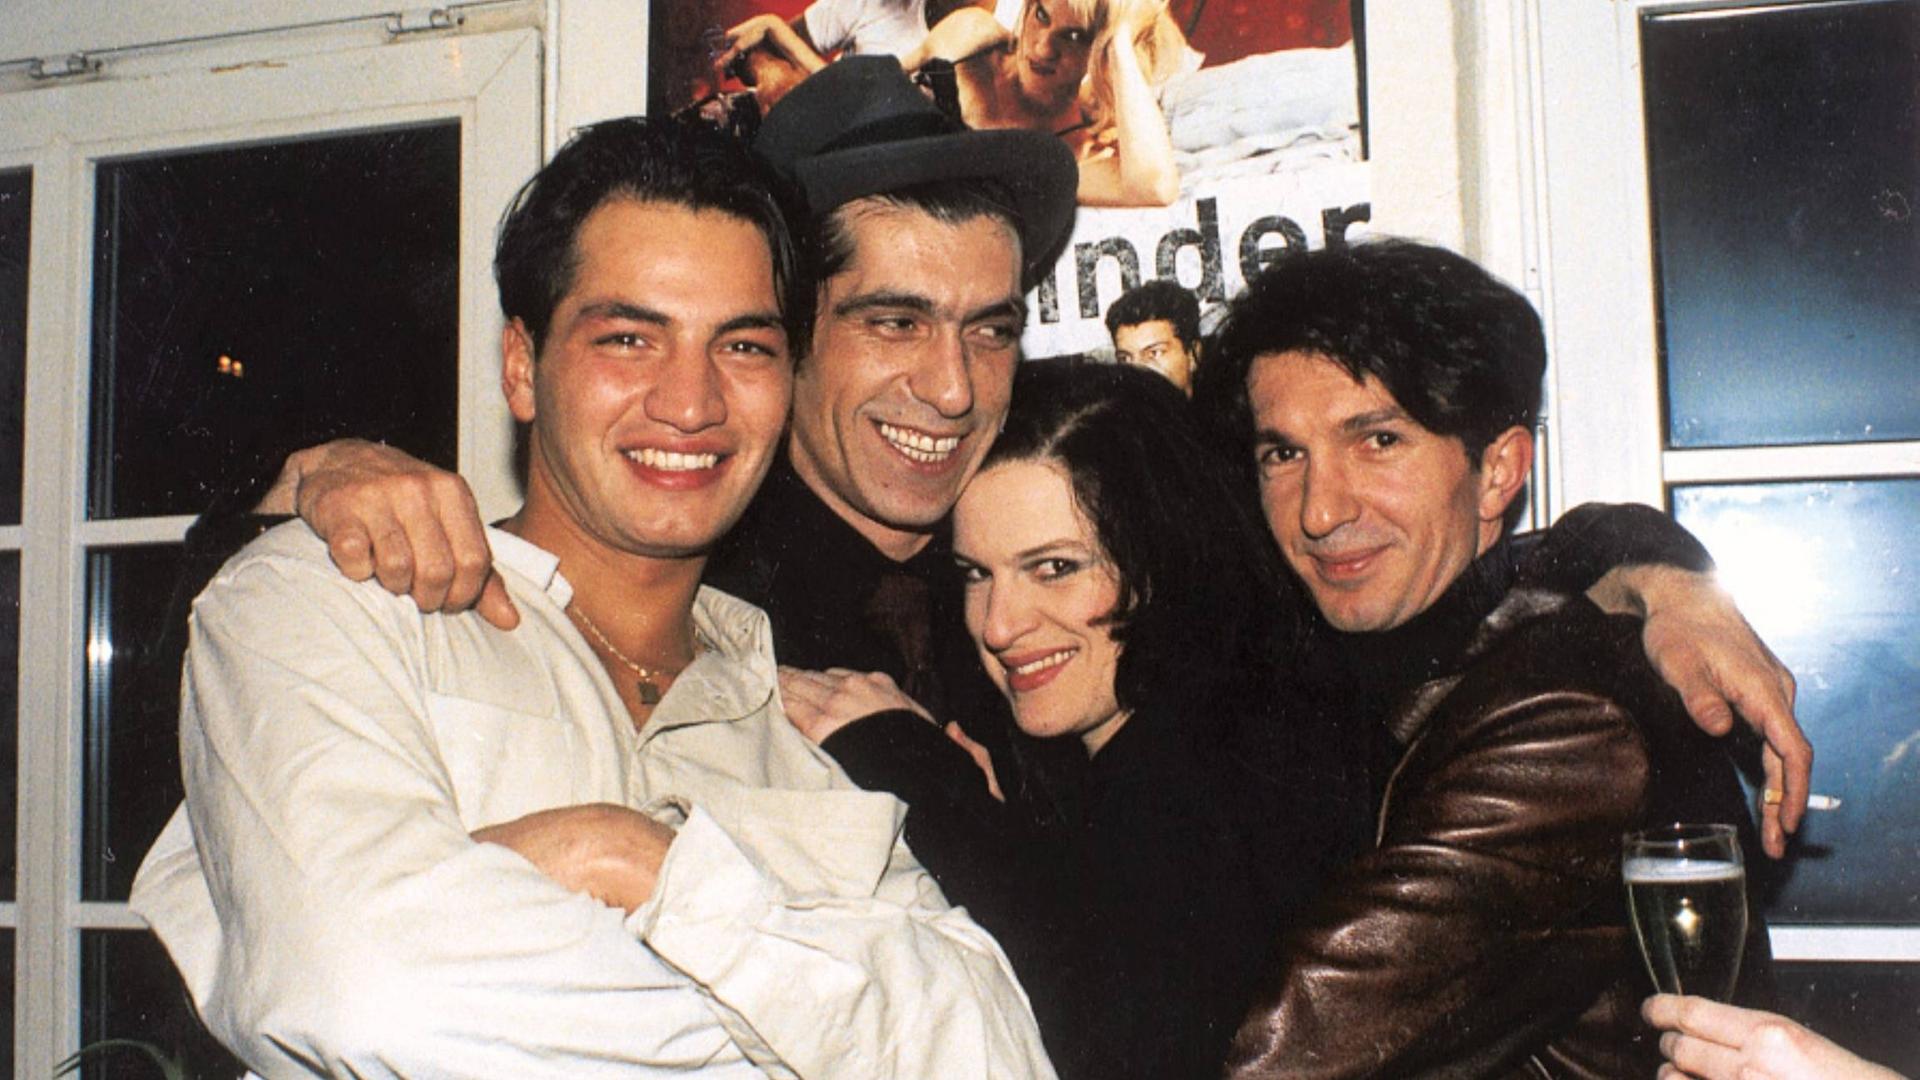 Yüksel Yavuz und drei Darsteller*innen des Filmes "Aprilkinder" liegen sich lachend in den Armen. Im Hintergrund ist das Filmplakat zu sehen.